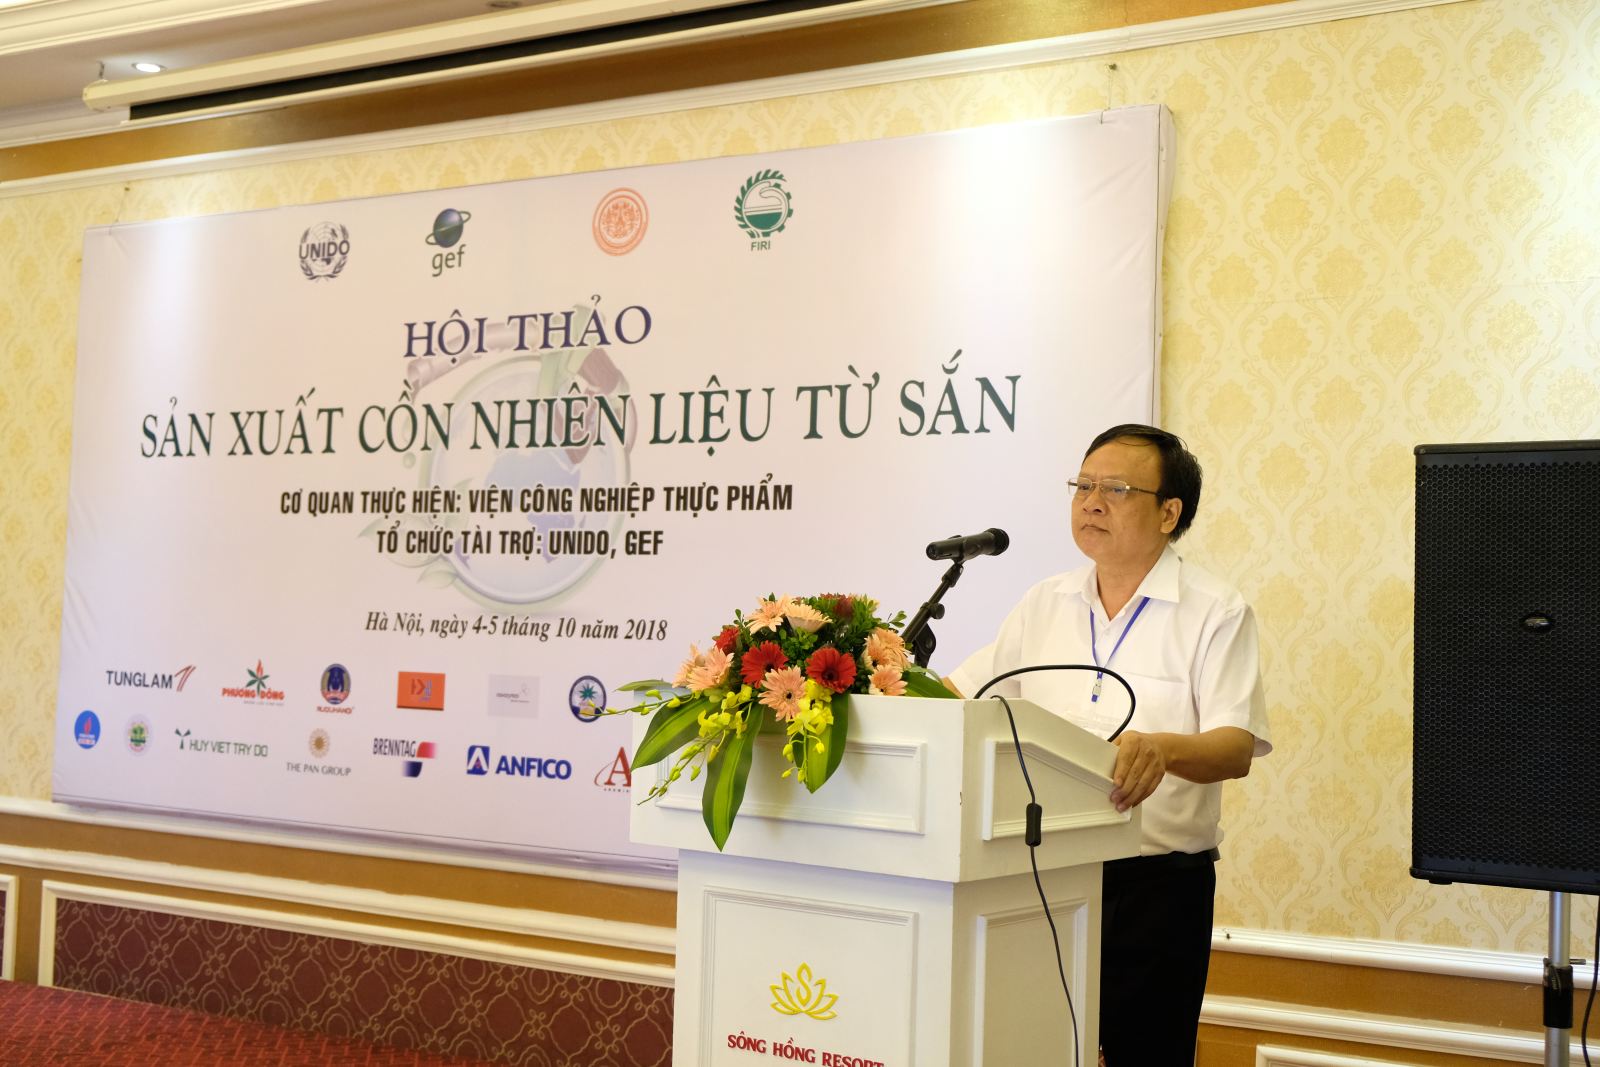 PGS. Lê Đức Mạnh, Viện trưởng, Giám đốc dự án tại Việt Nam đọc diễn văn khai mạc hội thảo